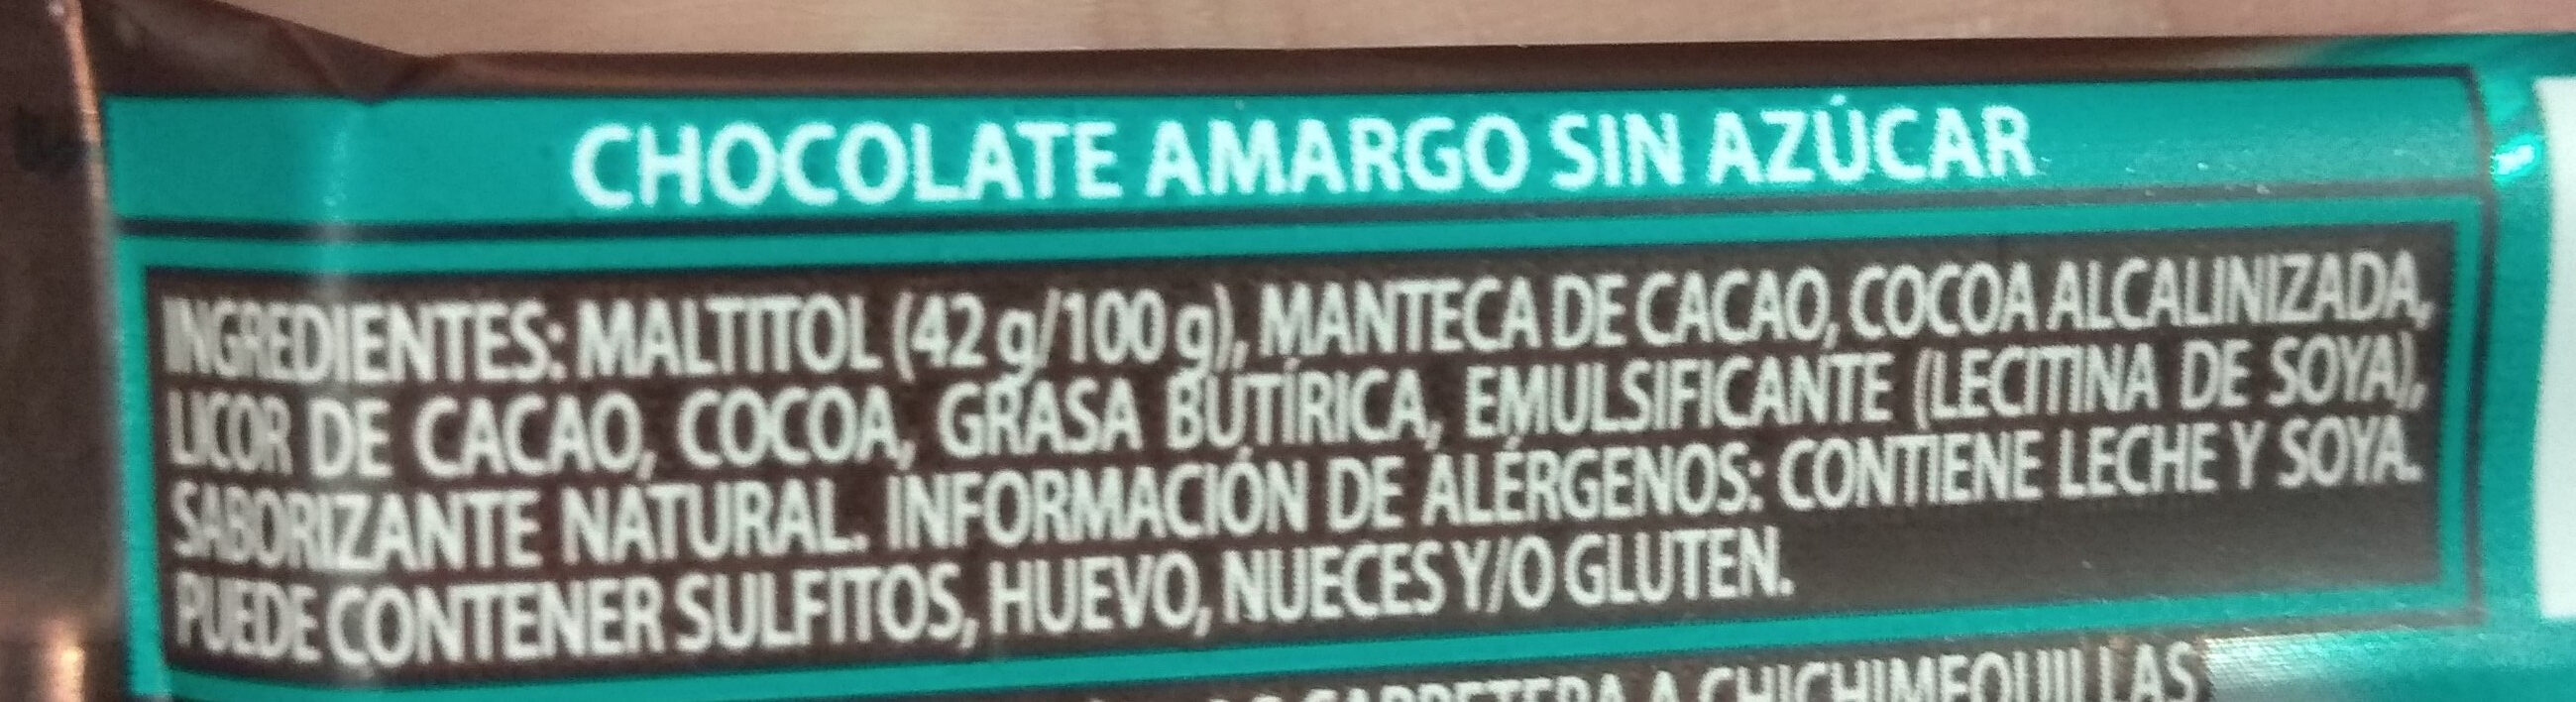 Chocolate Amargo sin azúcar 55% - Ingredients - es